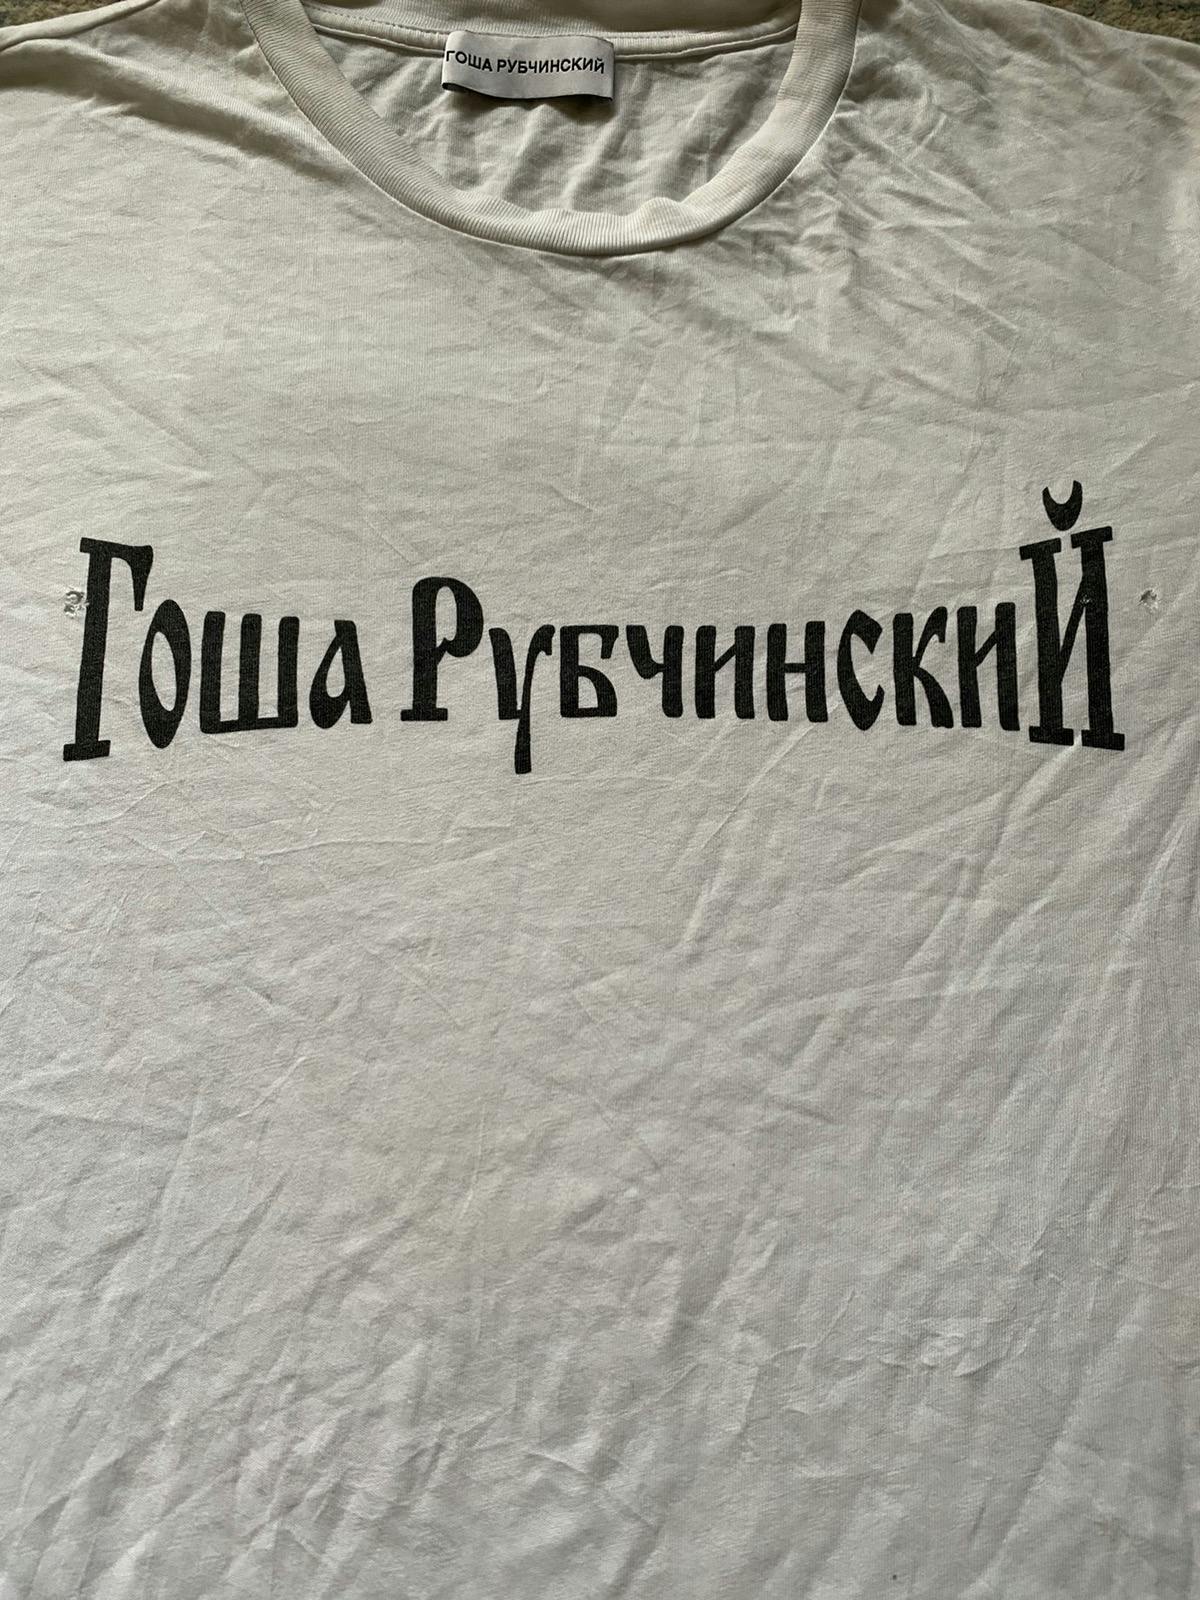 Gosha Rubchinskiy White T-Shirt - 2